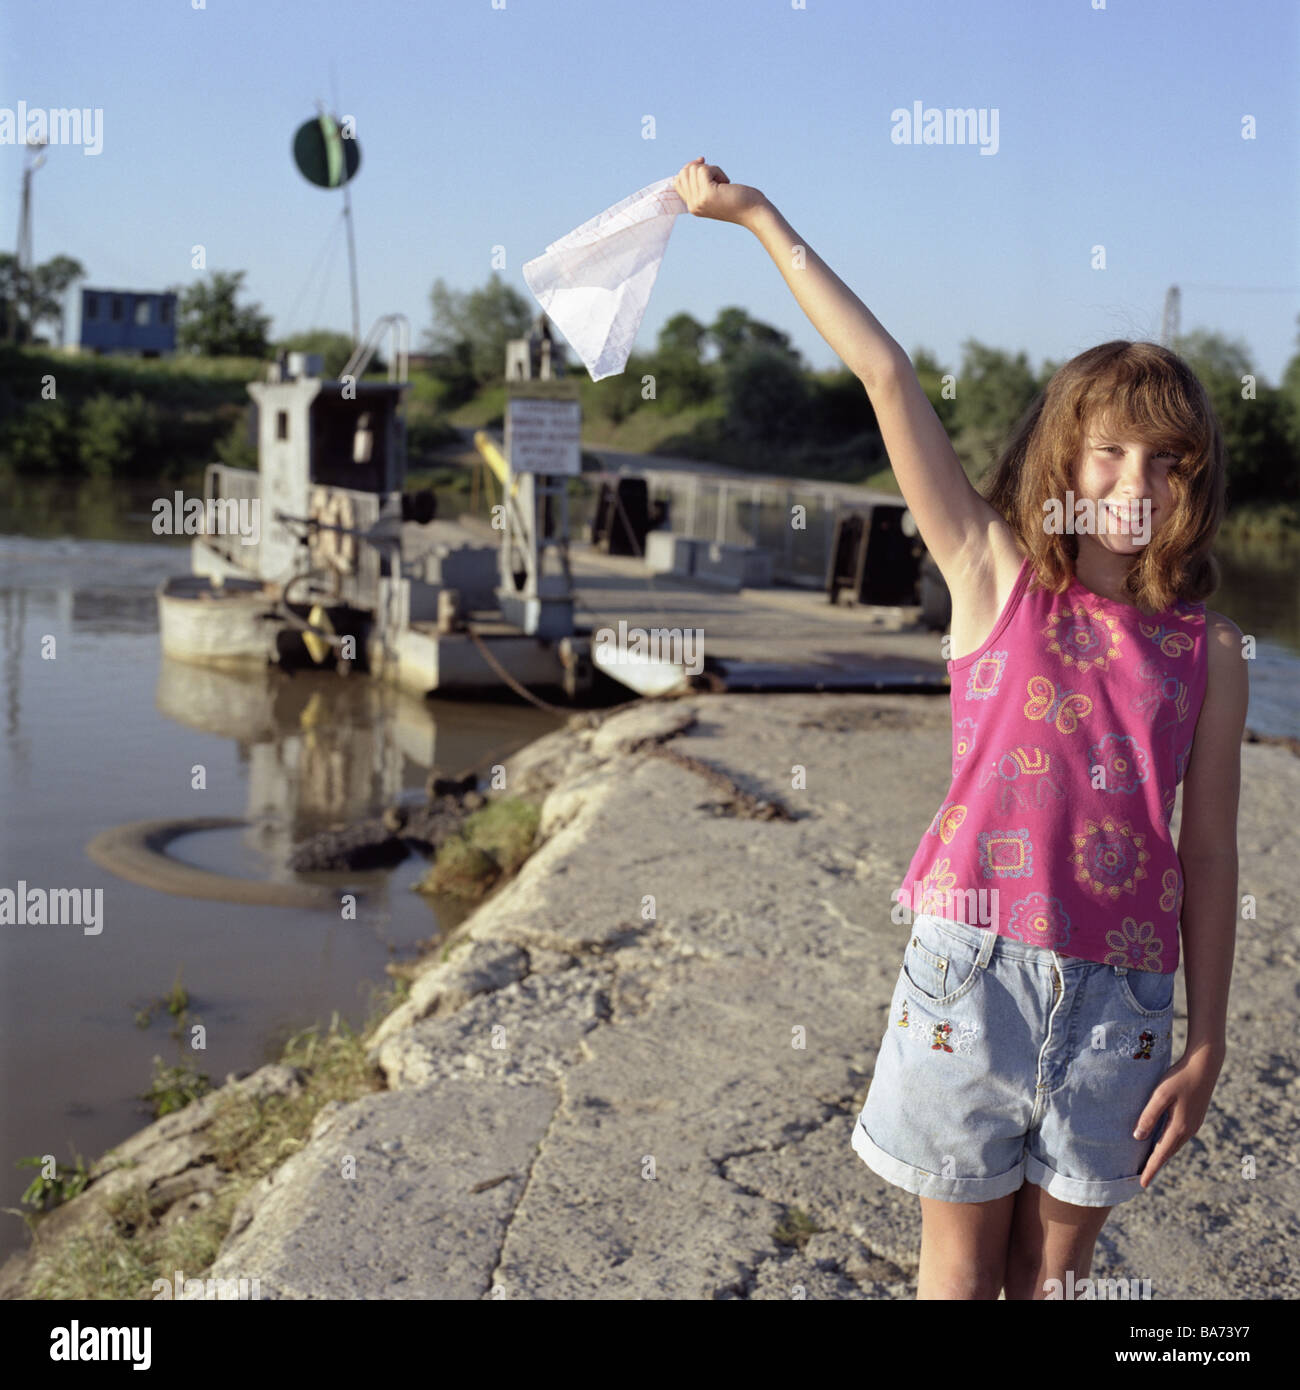 Pologne Tarnow river Dunajez filles ferry bateau vagues car-ferry (personnes de 10 ans d'expérience de la petite enfance enfant regard sourit joyeusement Banque D'Images